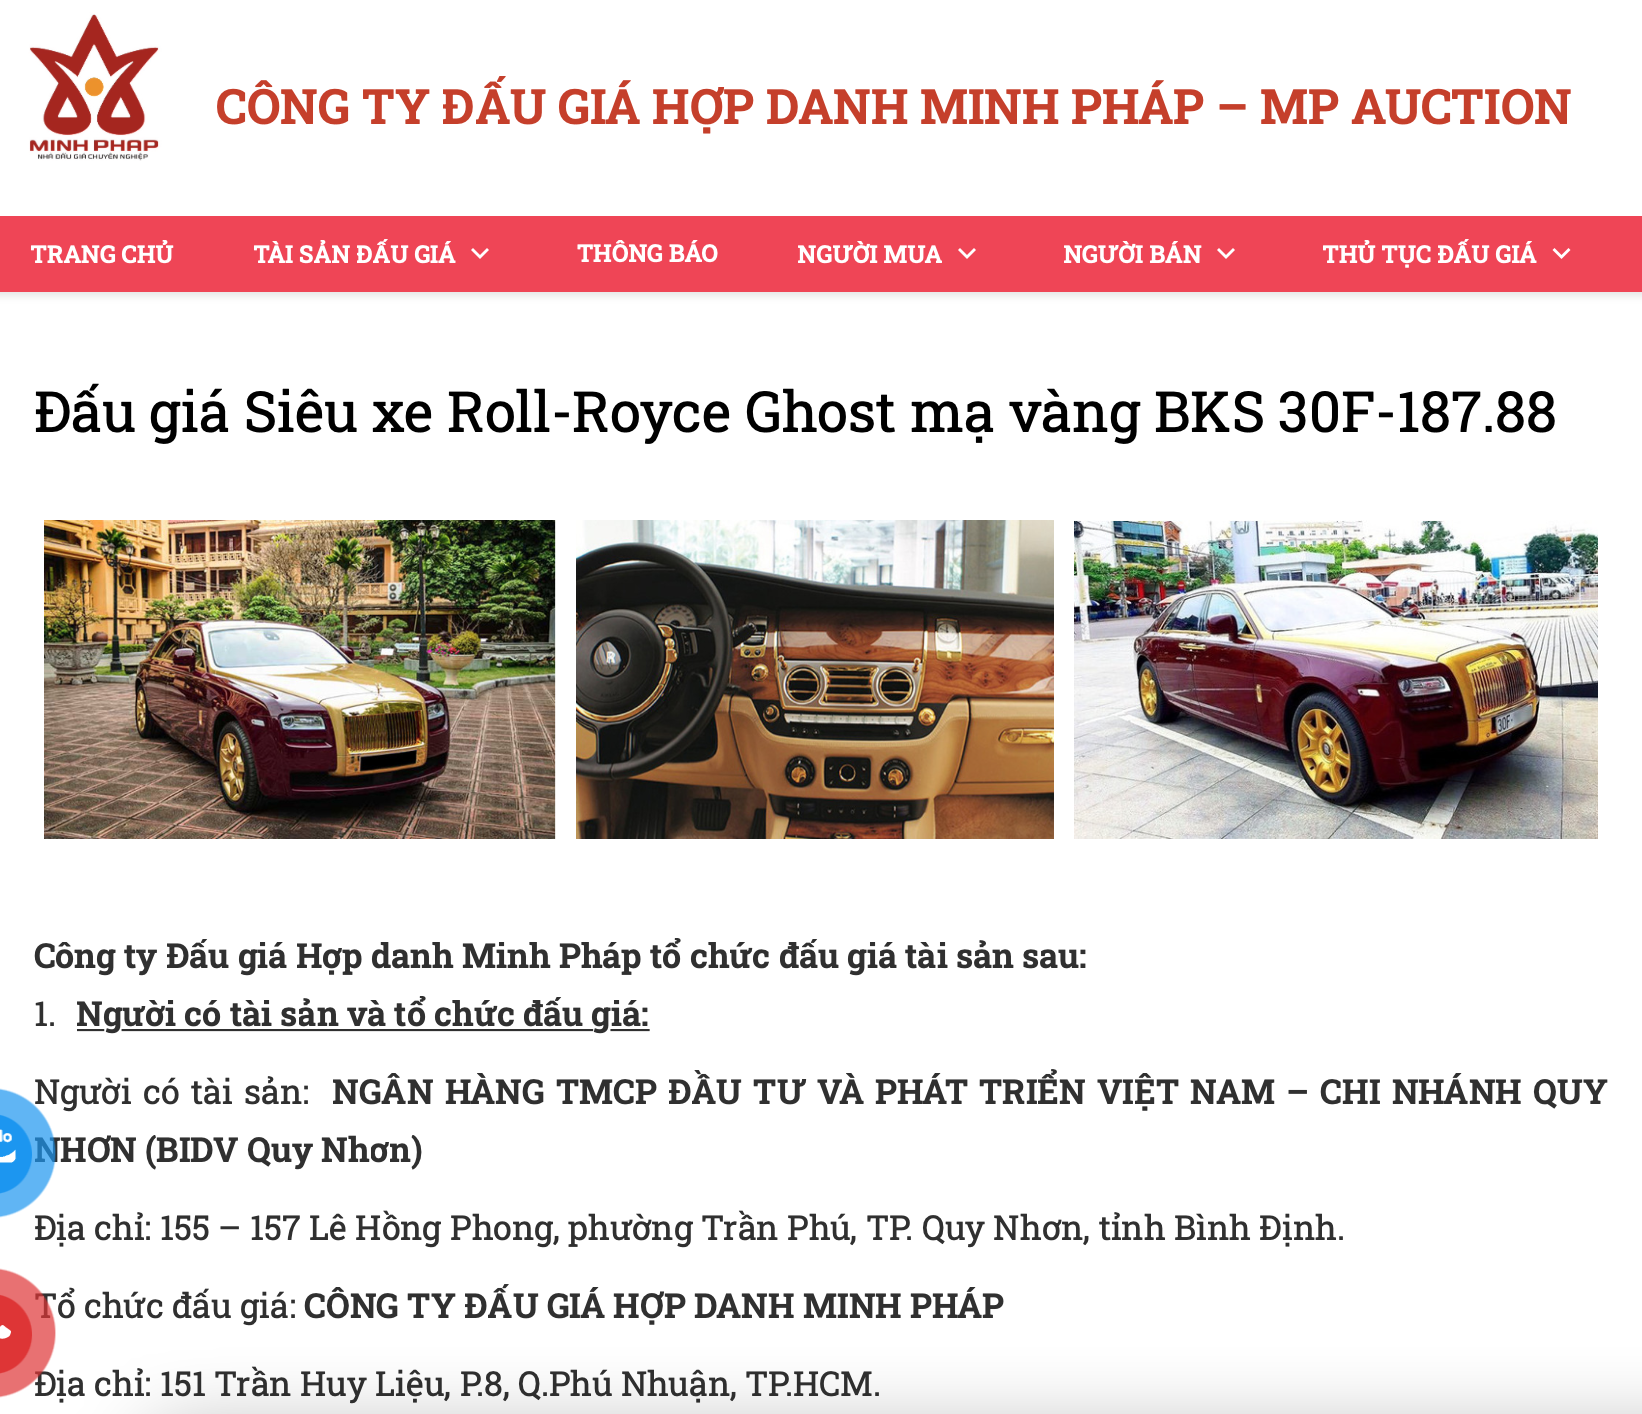 Giảm giá 10 tỷ đồng cho xe RollsRoyce ông Trịnh Văn Quyết từng sử dụng   Báo Dân trí